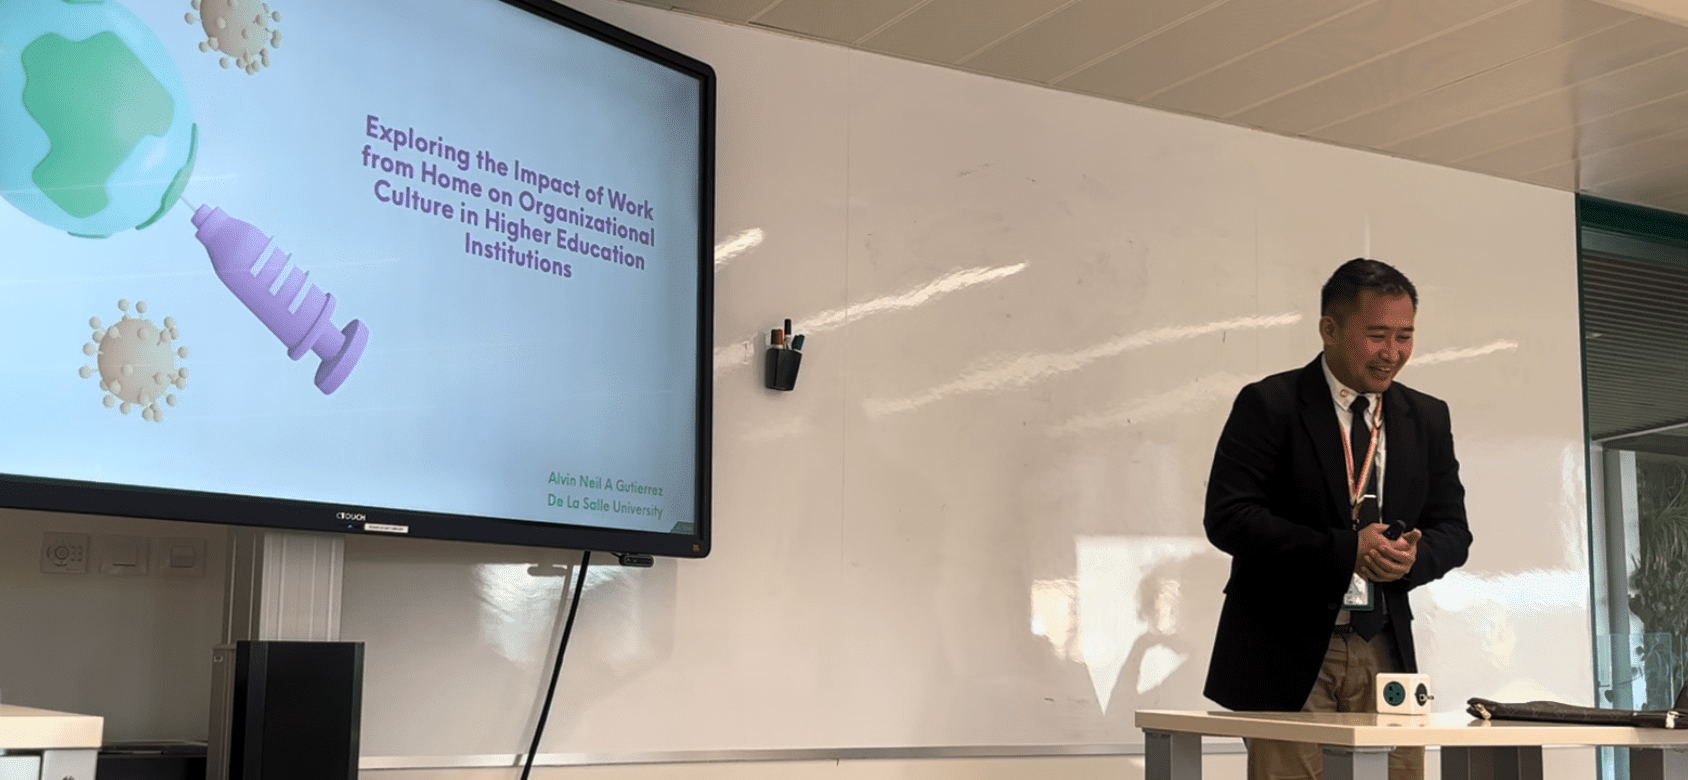 Imagen de un hombre de pie junto a una pantalla que muestra diapositivas, realizando una presentación durante el seminario.